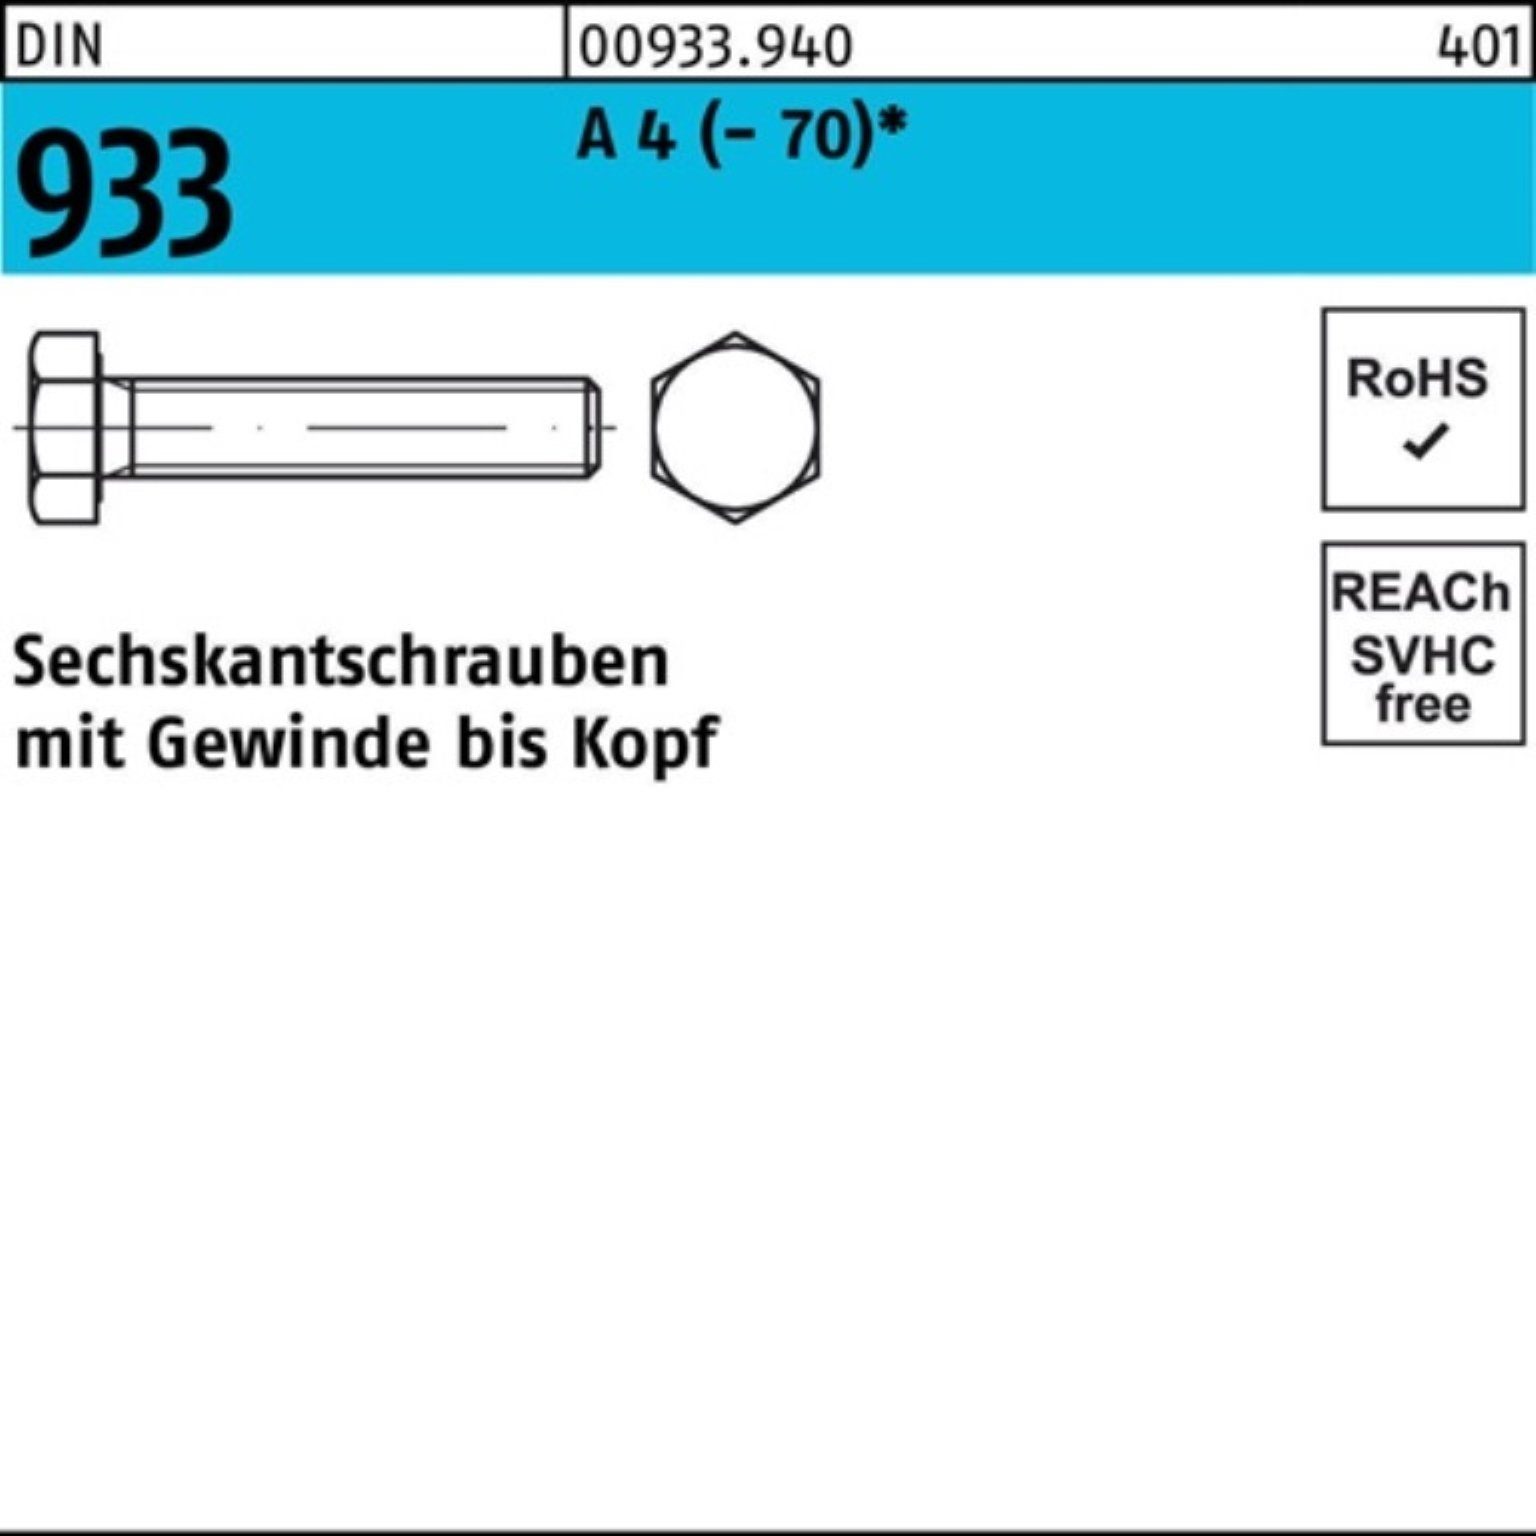 VG M20x Reyher 100er DIN Pack Sechskantschraube 933 Sechskantschraube Stück (70) 55 D A 4 25